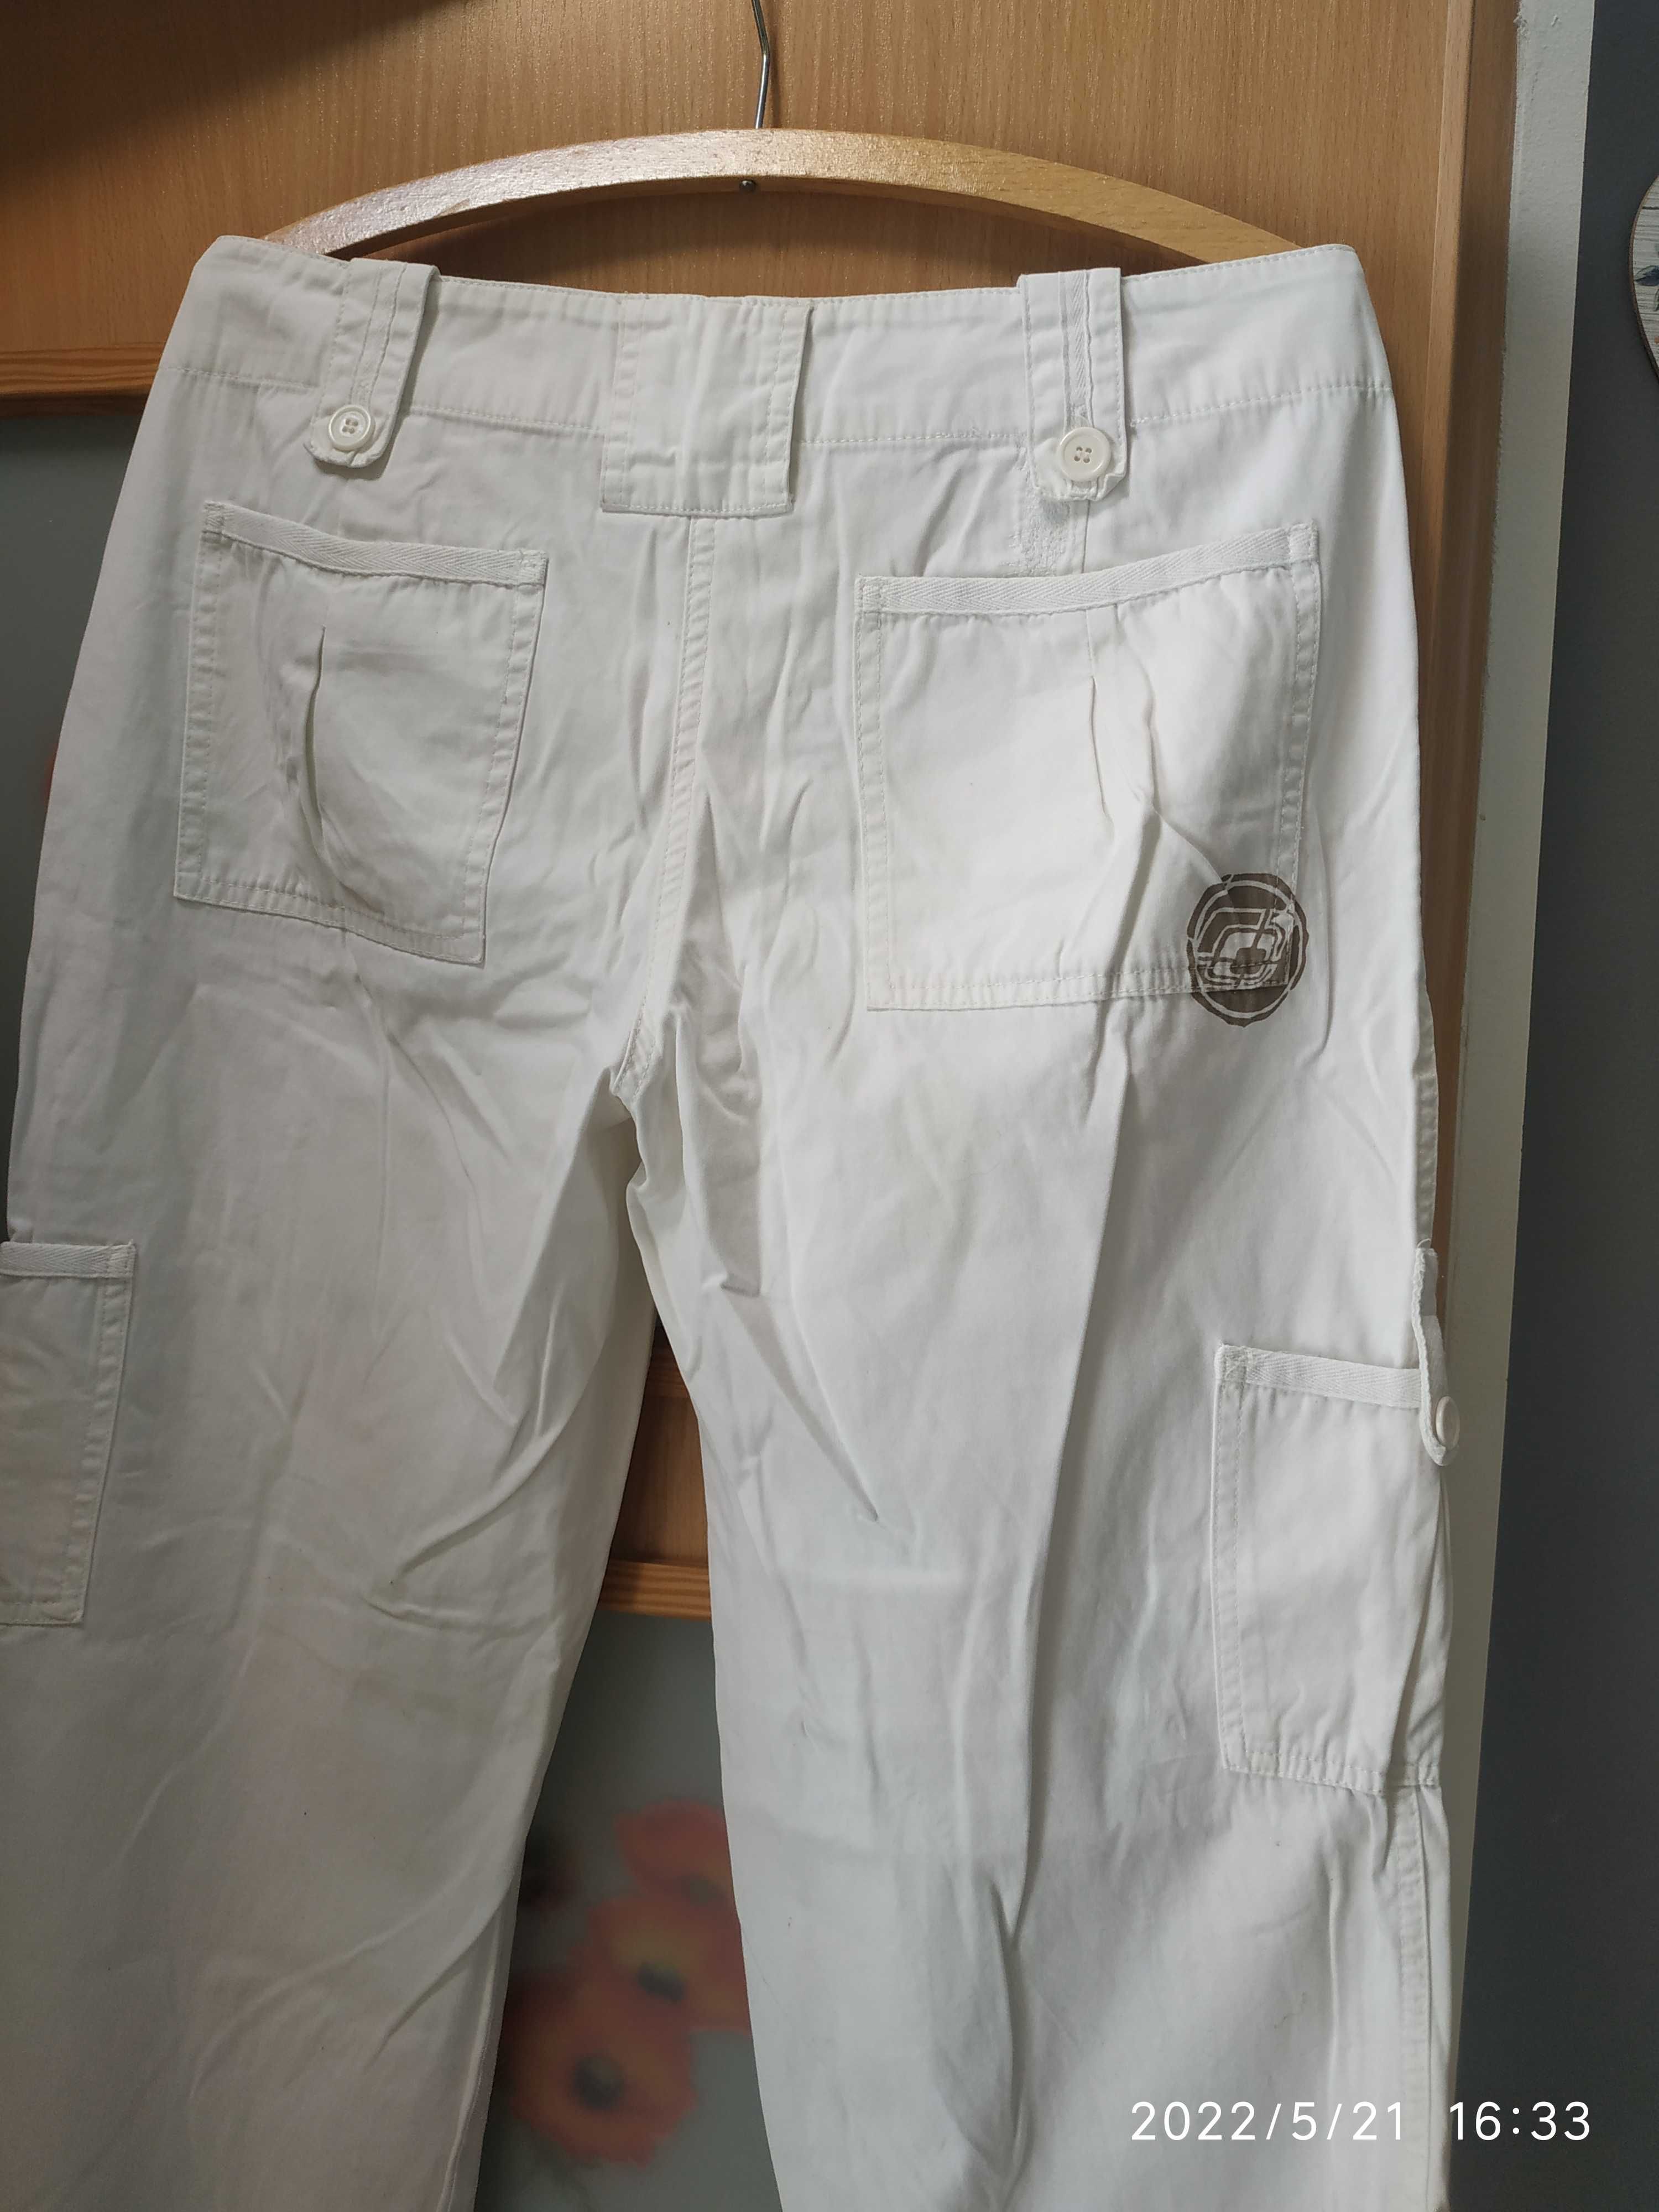 Damskie białe spodnie 100% bawełna , rozmiar 40/42